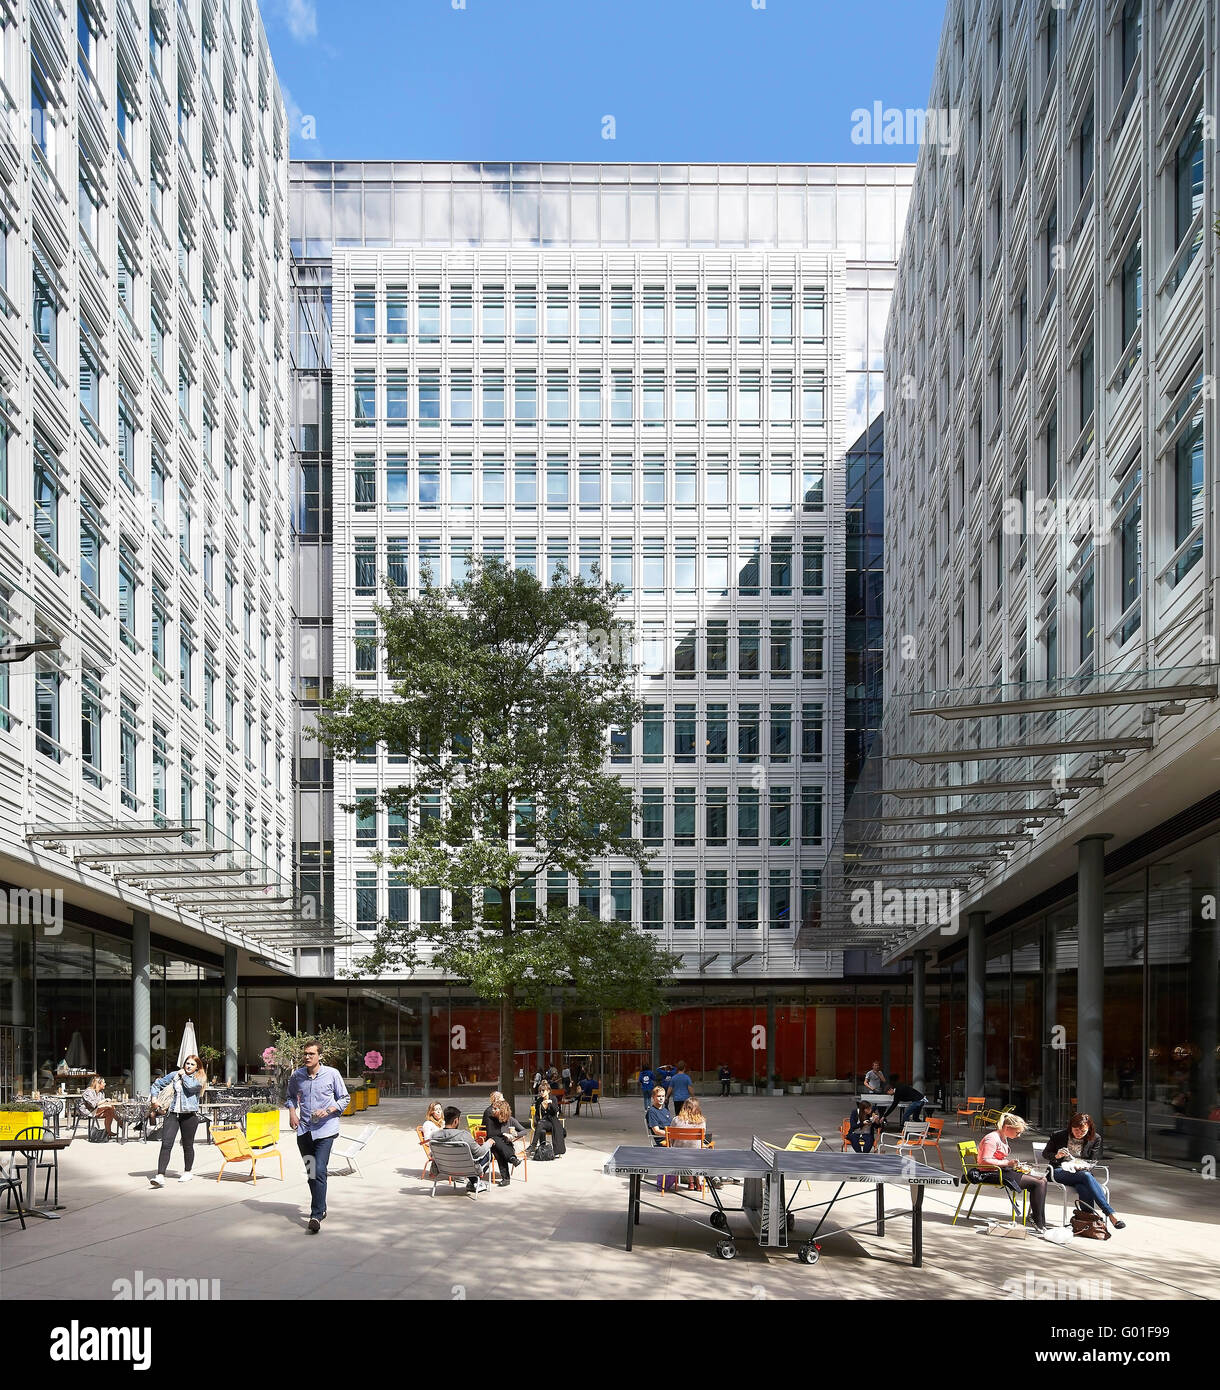 Cortile pubblico con posti a sedere informali e area per lo svago. Central Saint Giles, Londra, Regno Unito. Architetto: Renzo Piano Building Workshop, 2015. Foto Stock